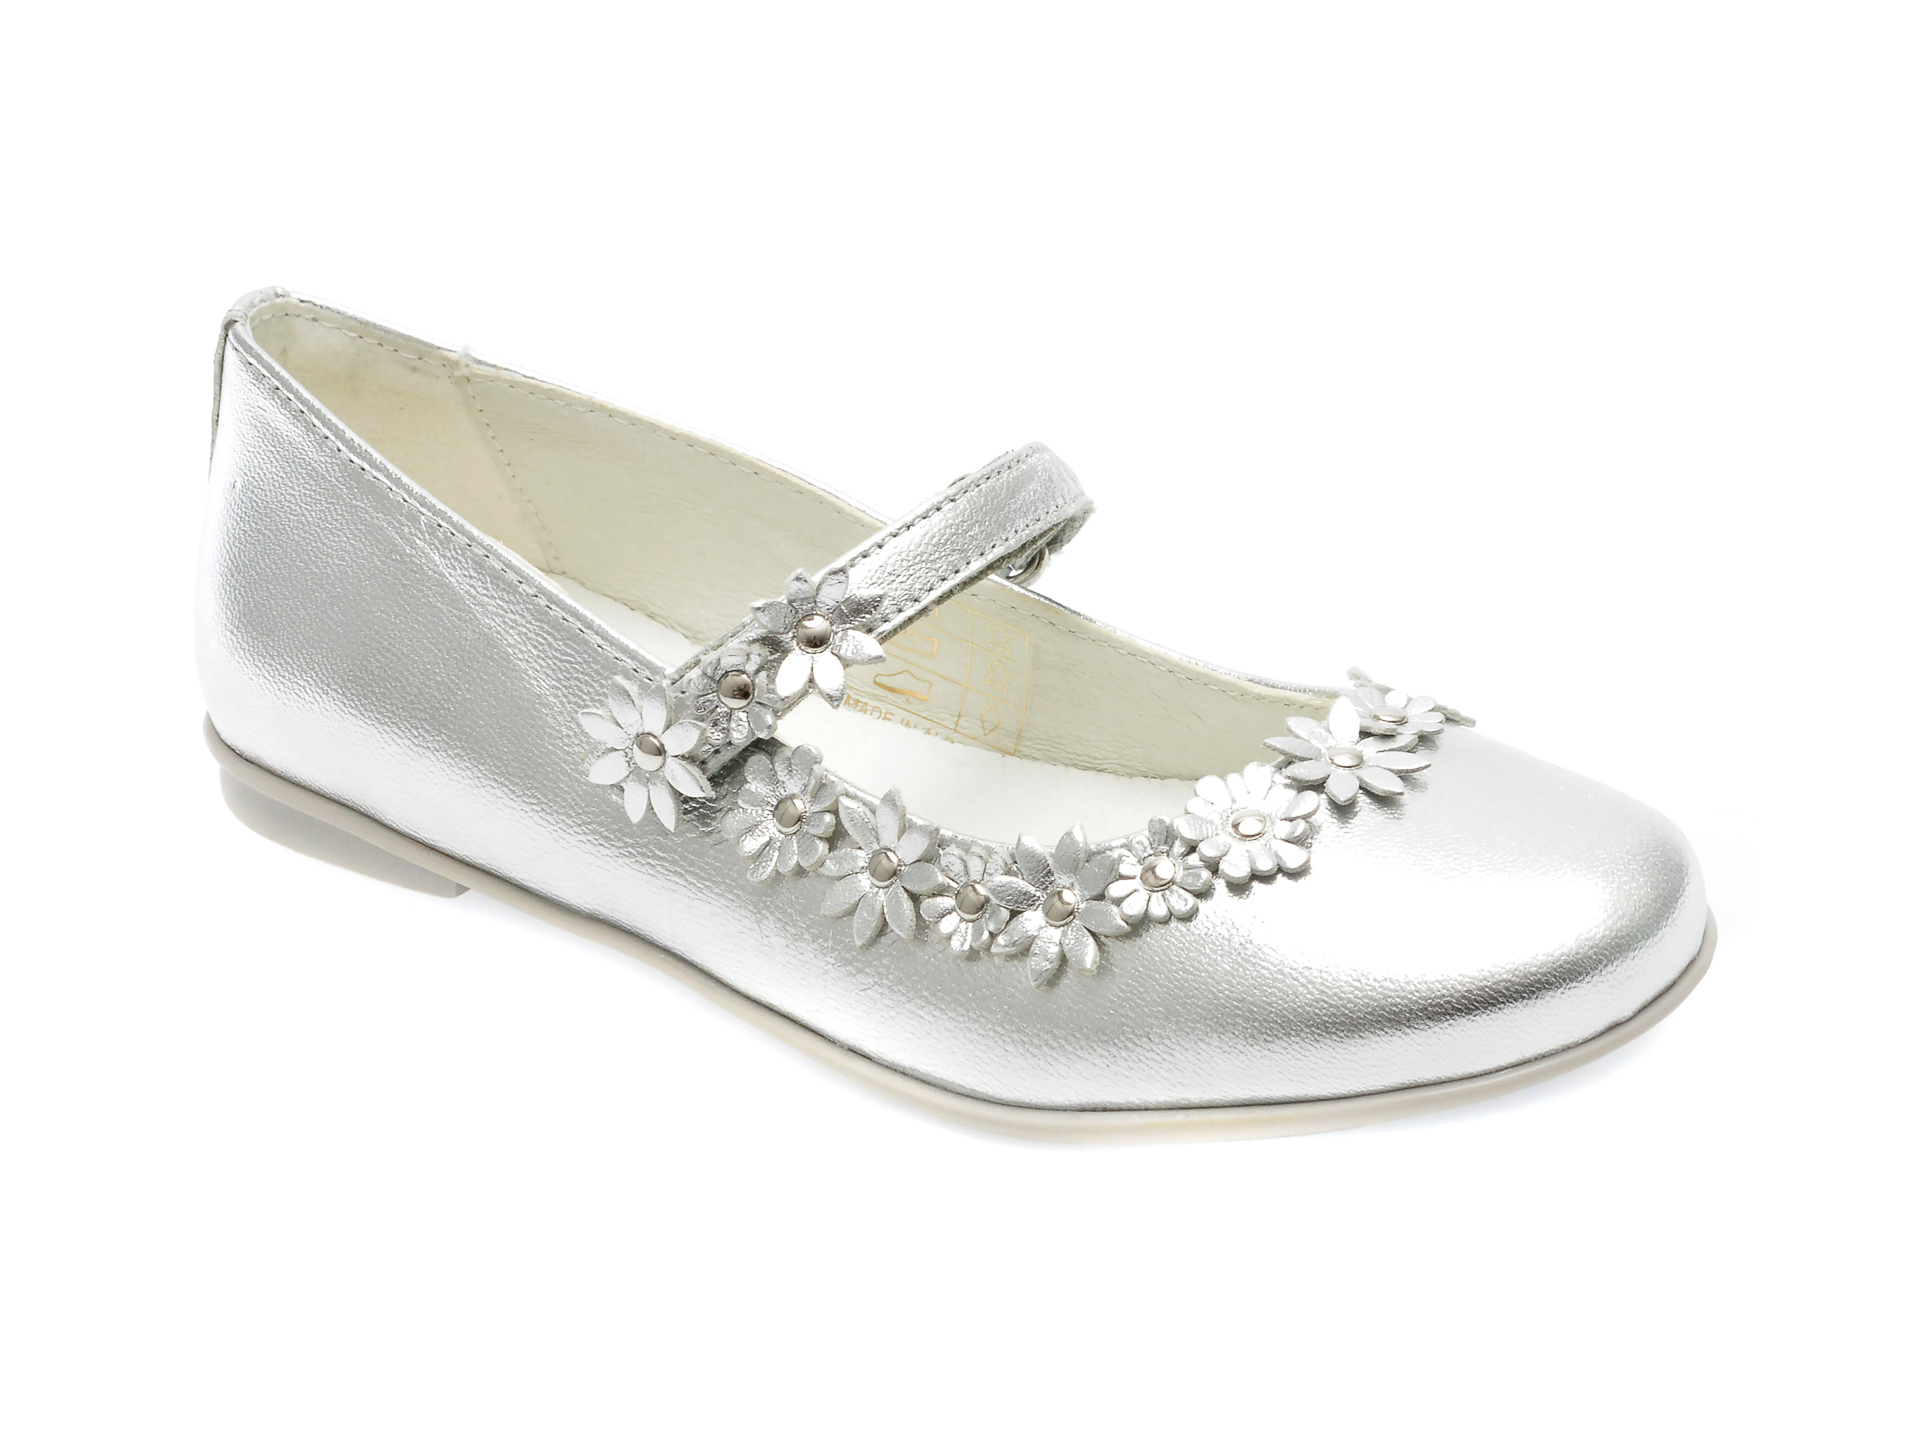 Pantofi PRIMIGI argintii, 39201, din piele naturala /copii/incaltaminte